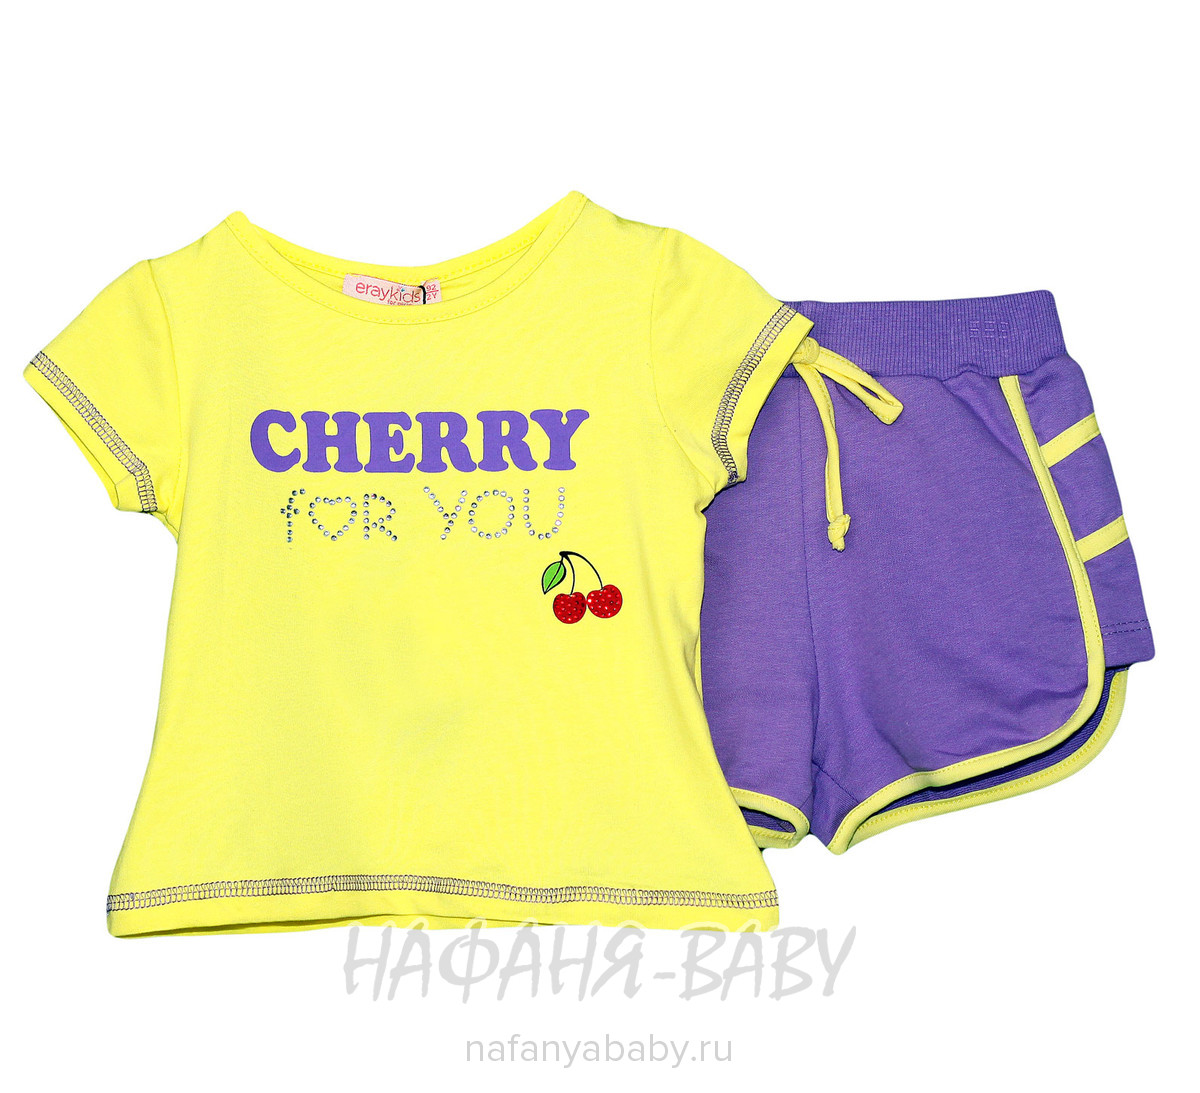 Детский костюм (футболка+шорты) ERAY Kids, купить в интернет магазине Нафаня. арт: 11311.